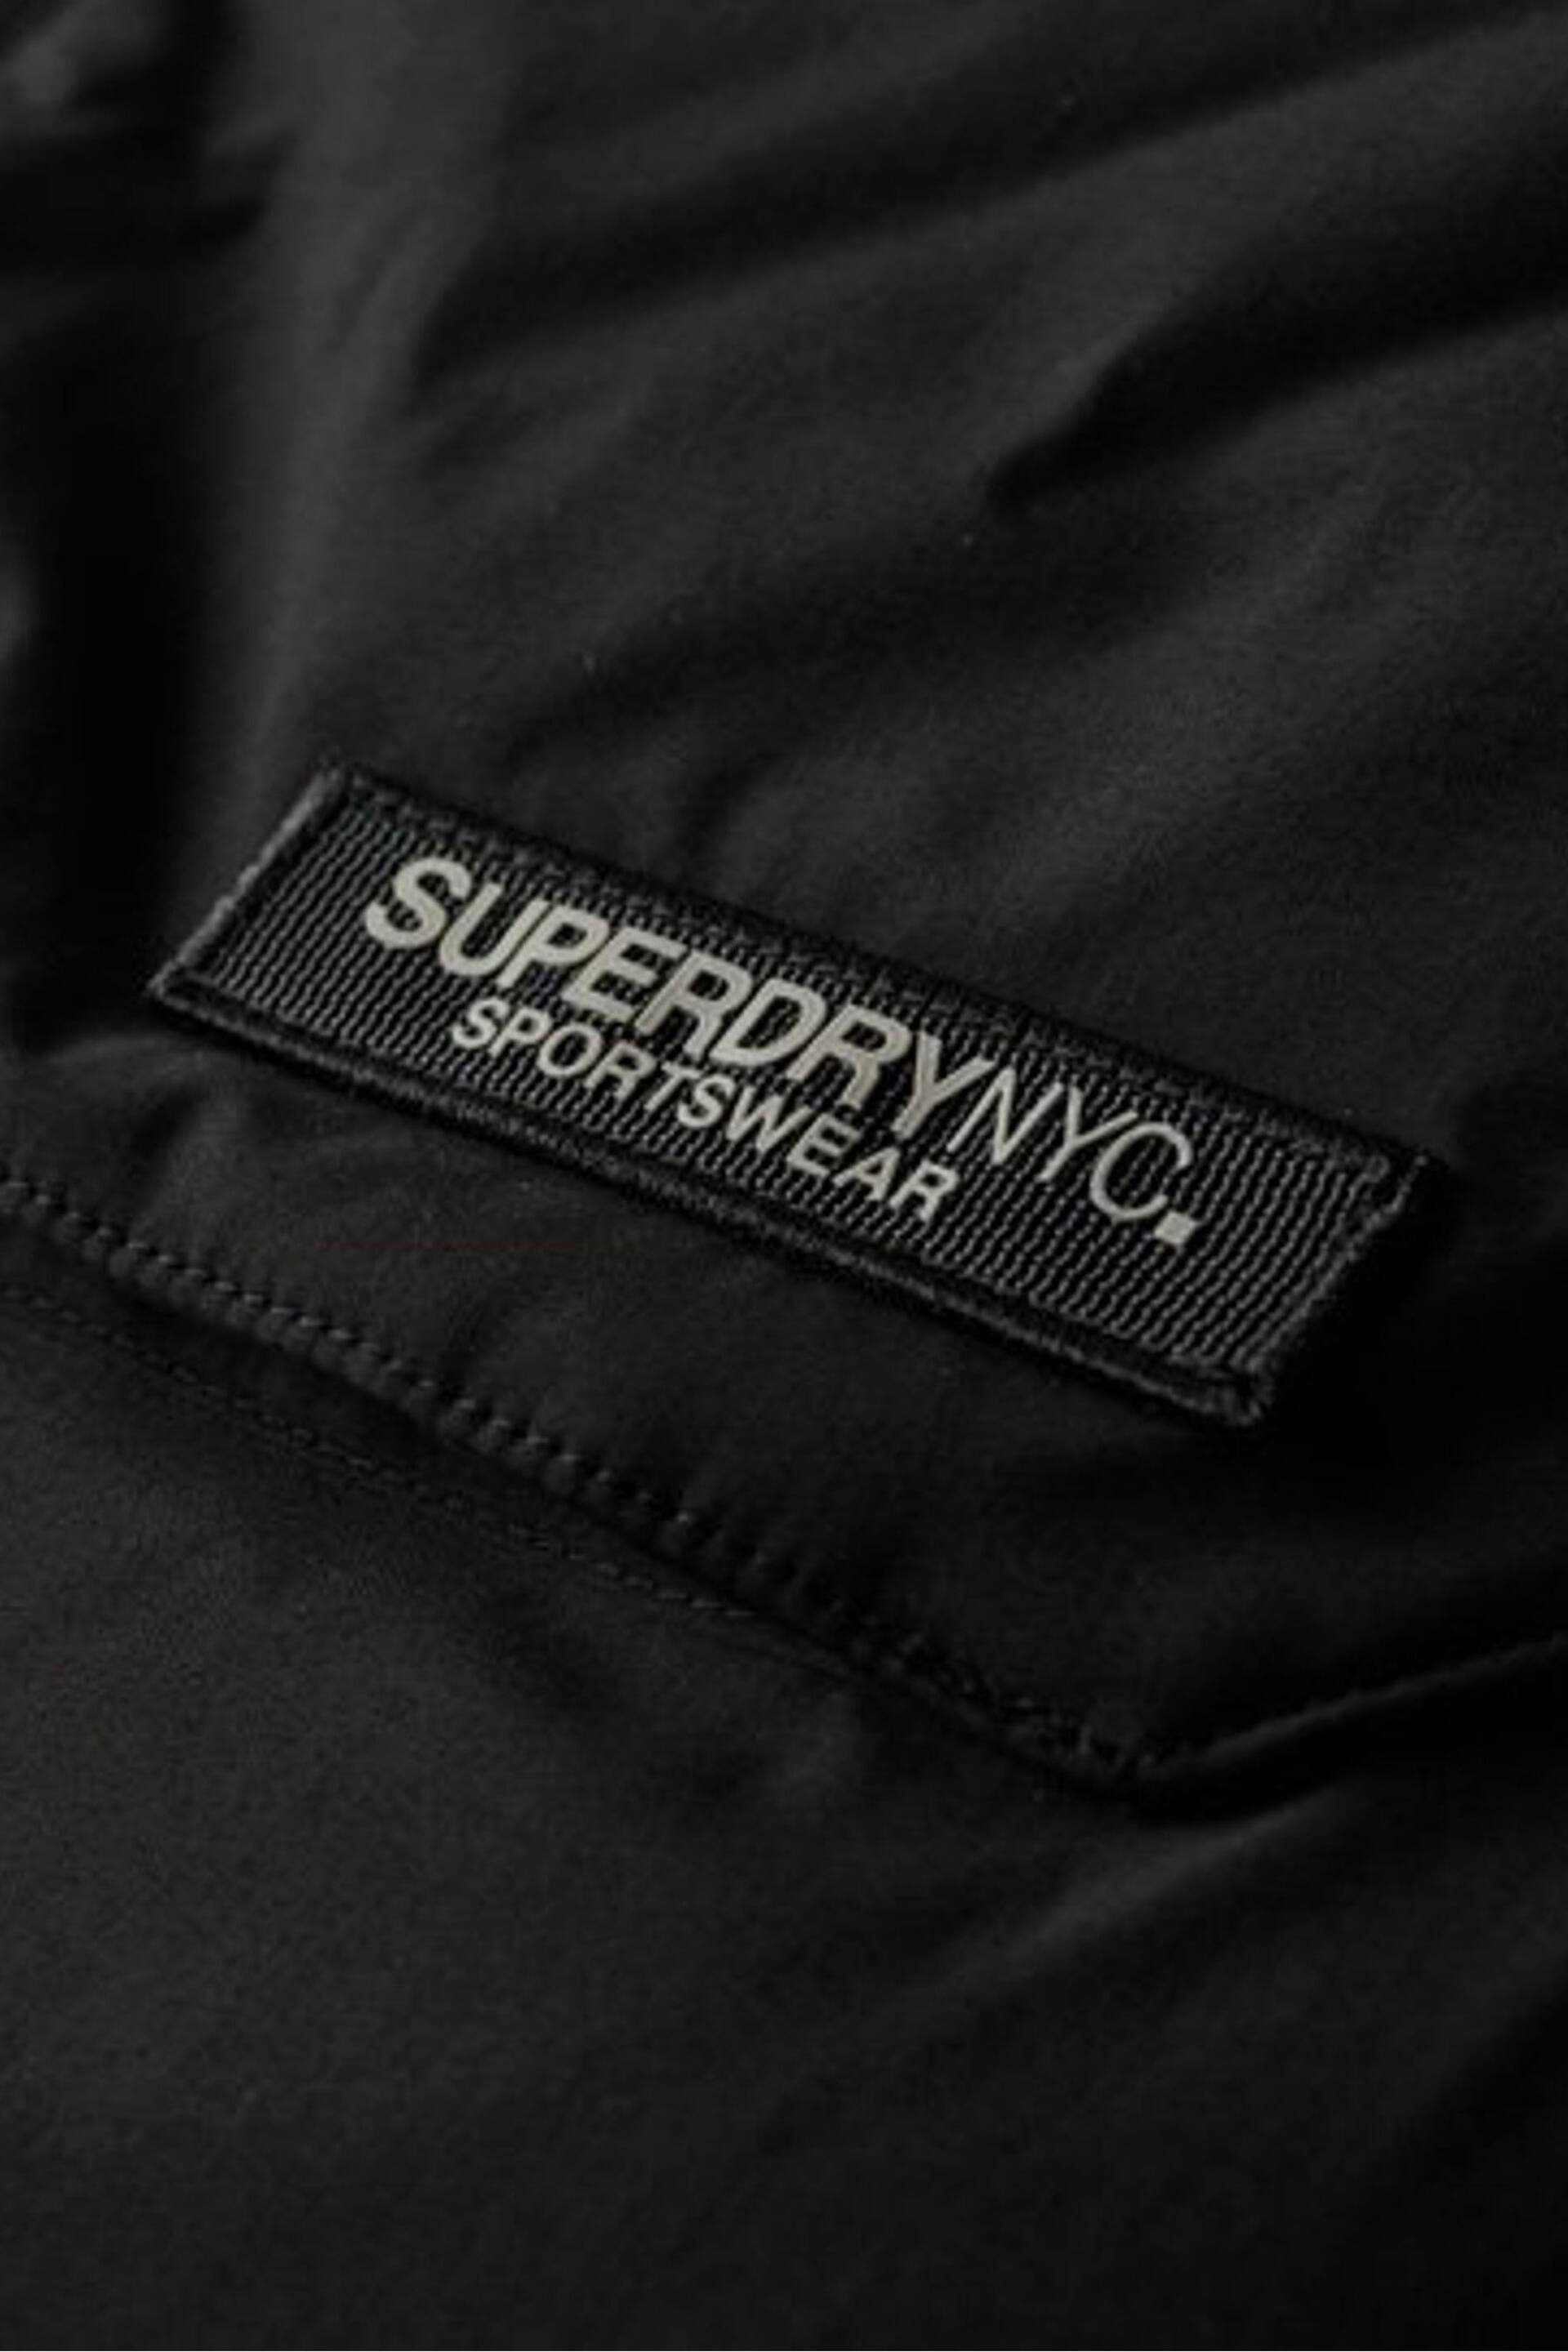 Superdry Black Chrome City Padded Parka Jacket - Image 5 of 6